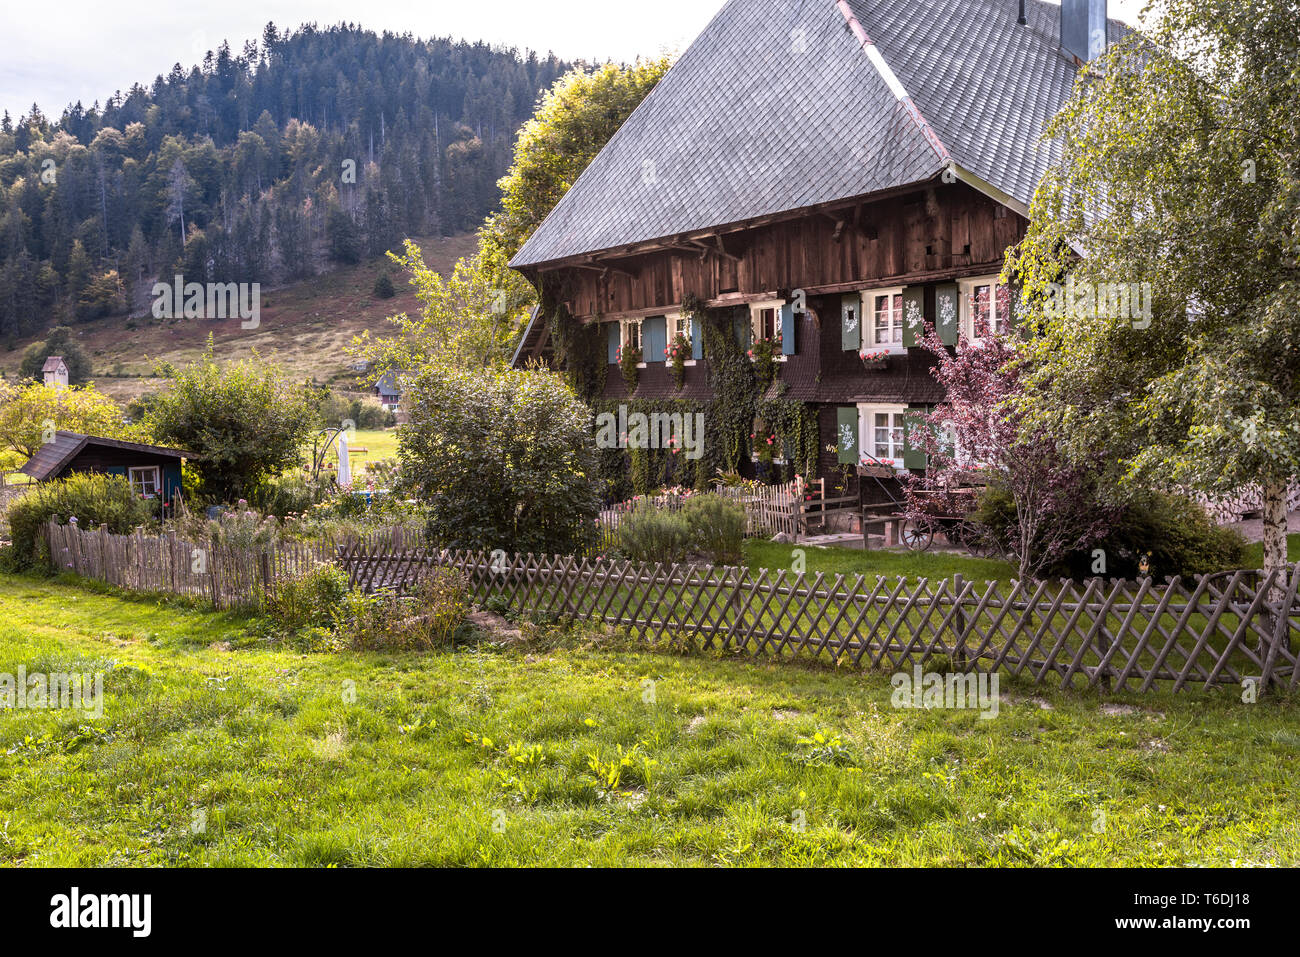 Tipica casa nella Foresta Nera con tetto hipped e colline boscose, villaggio Menzenschwand, Germania, architettura originale dell'Alta Foresta Nera Foto Stock